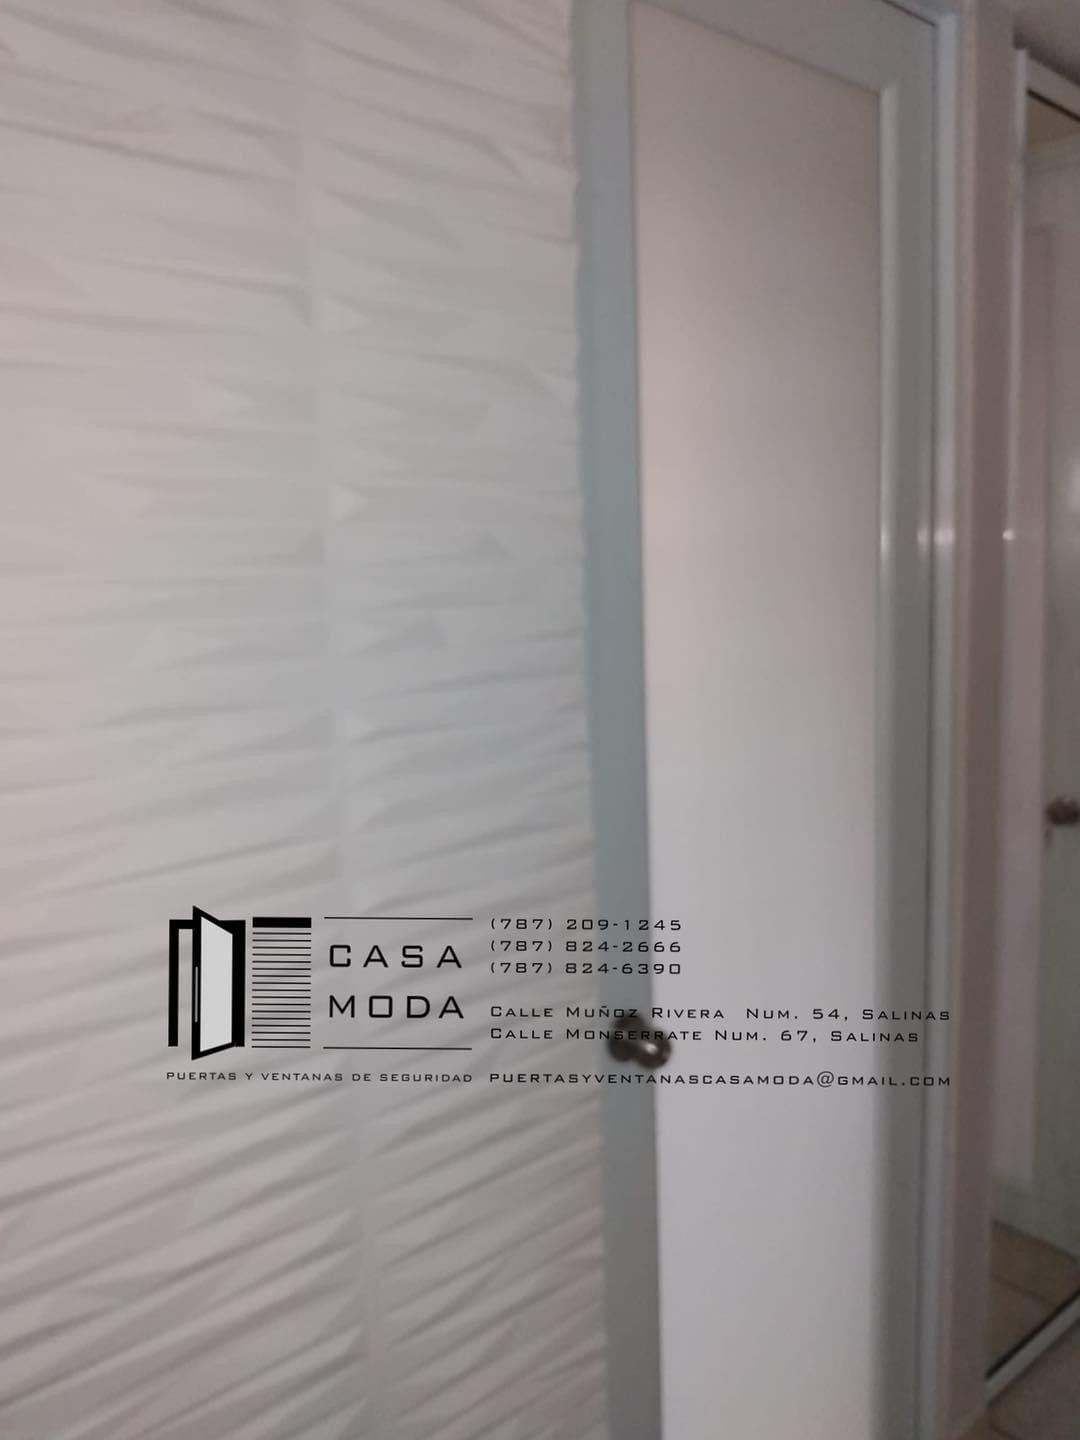 Modelo Bars 3D Walls PR